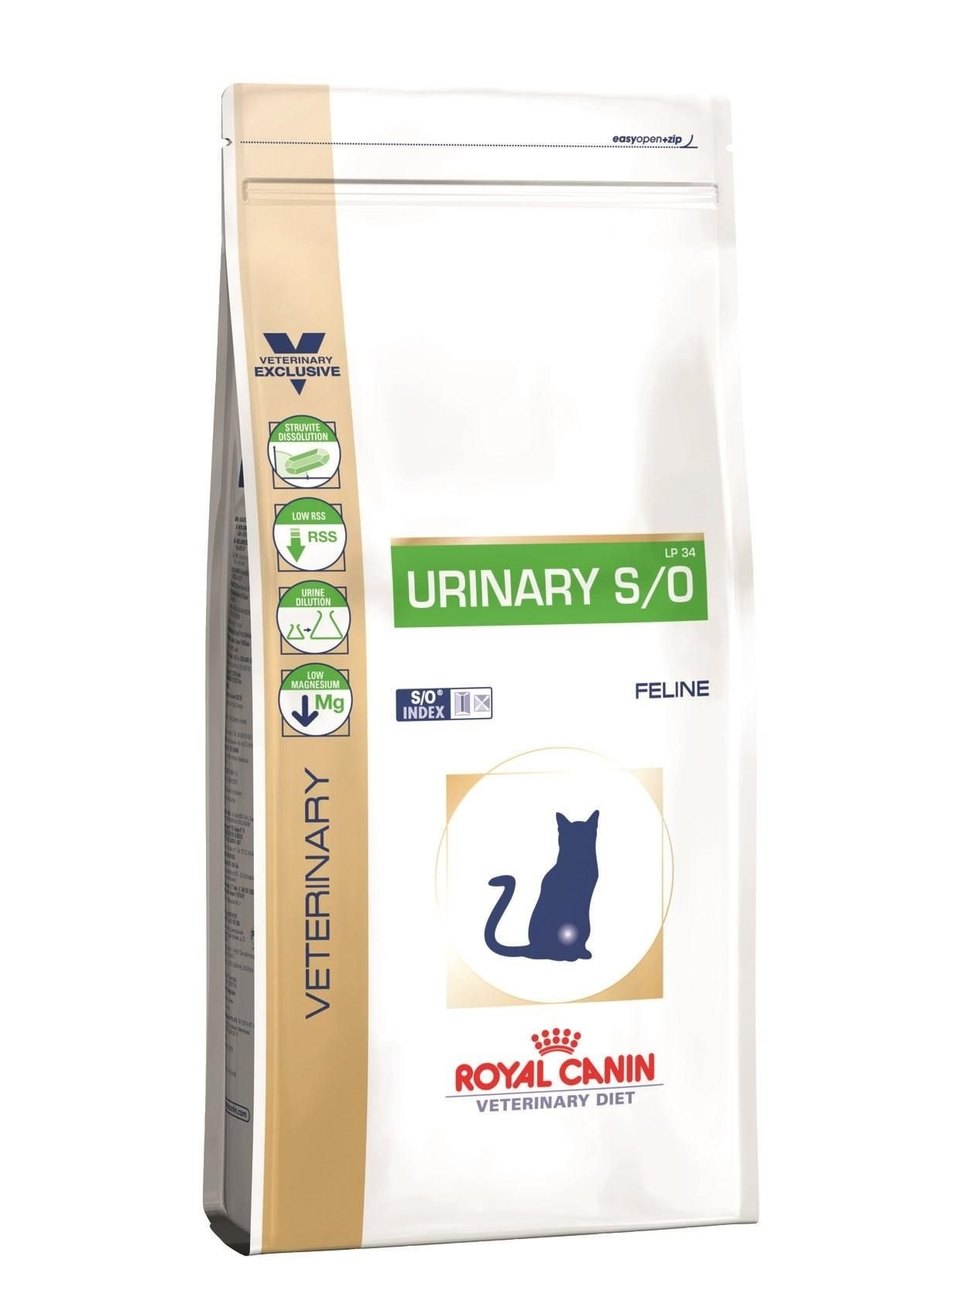 ROYAL CANIN URINARY S/O High Dilution Feline 7 kg Katze